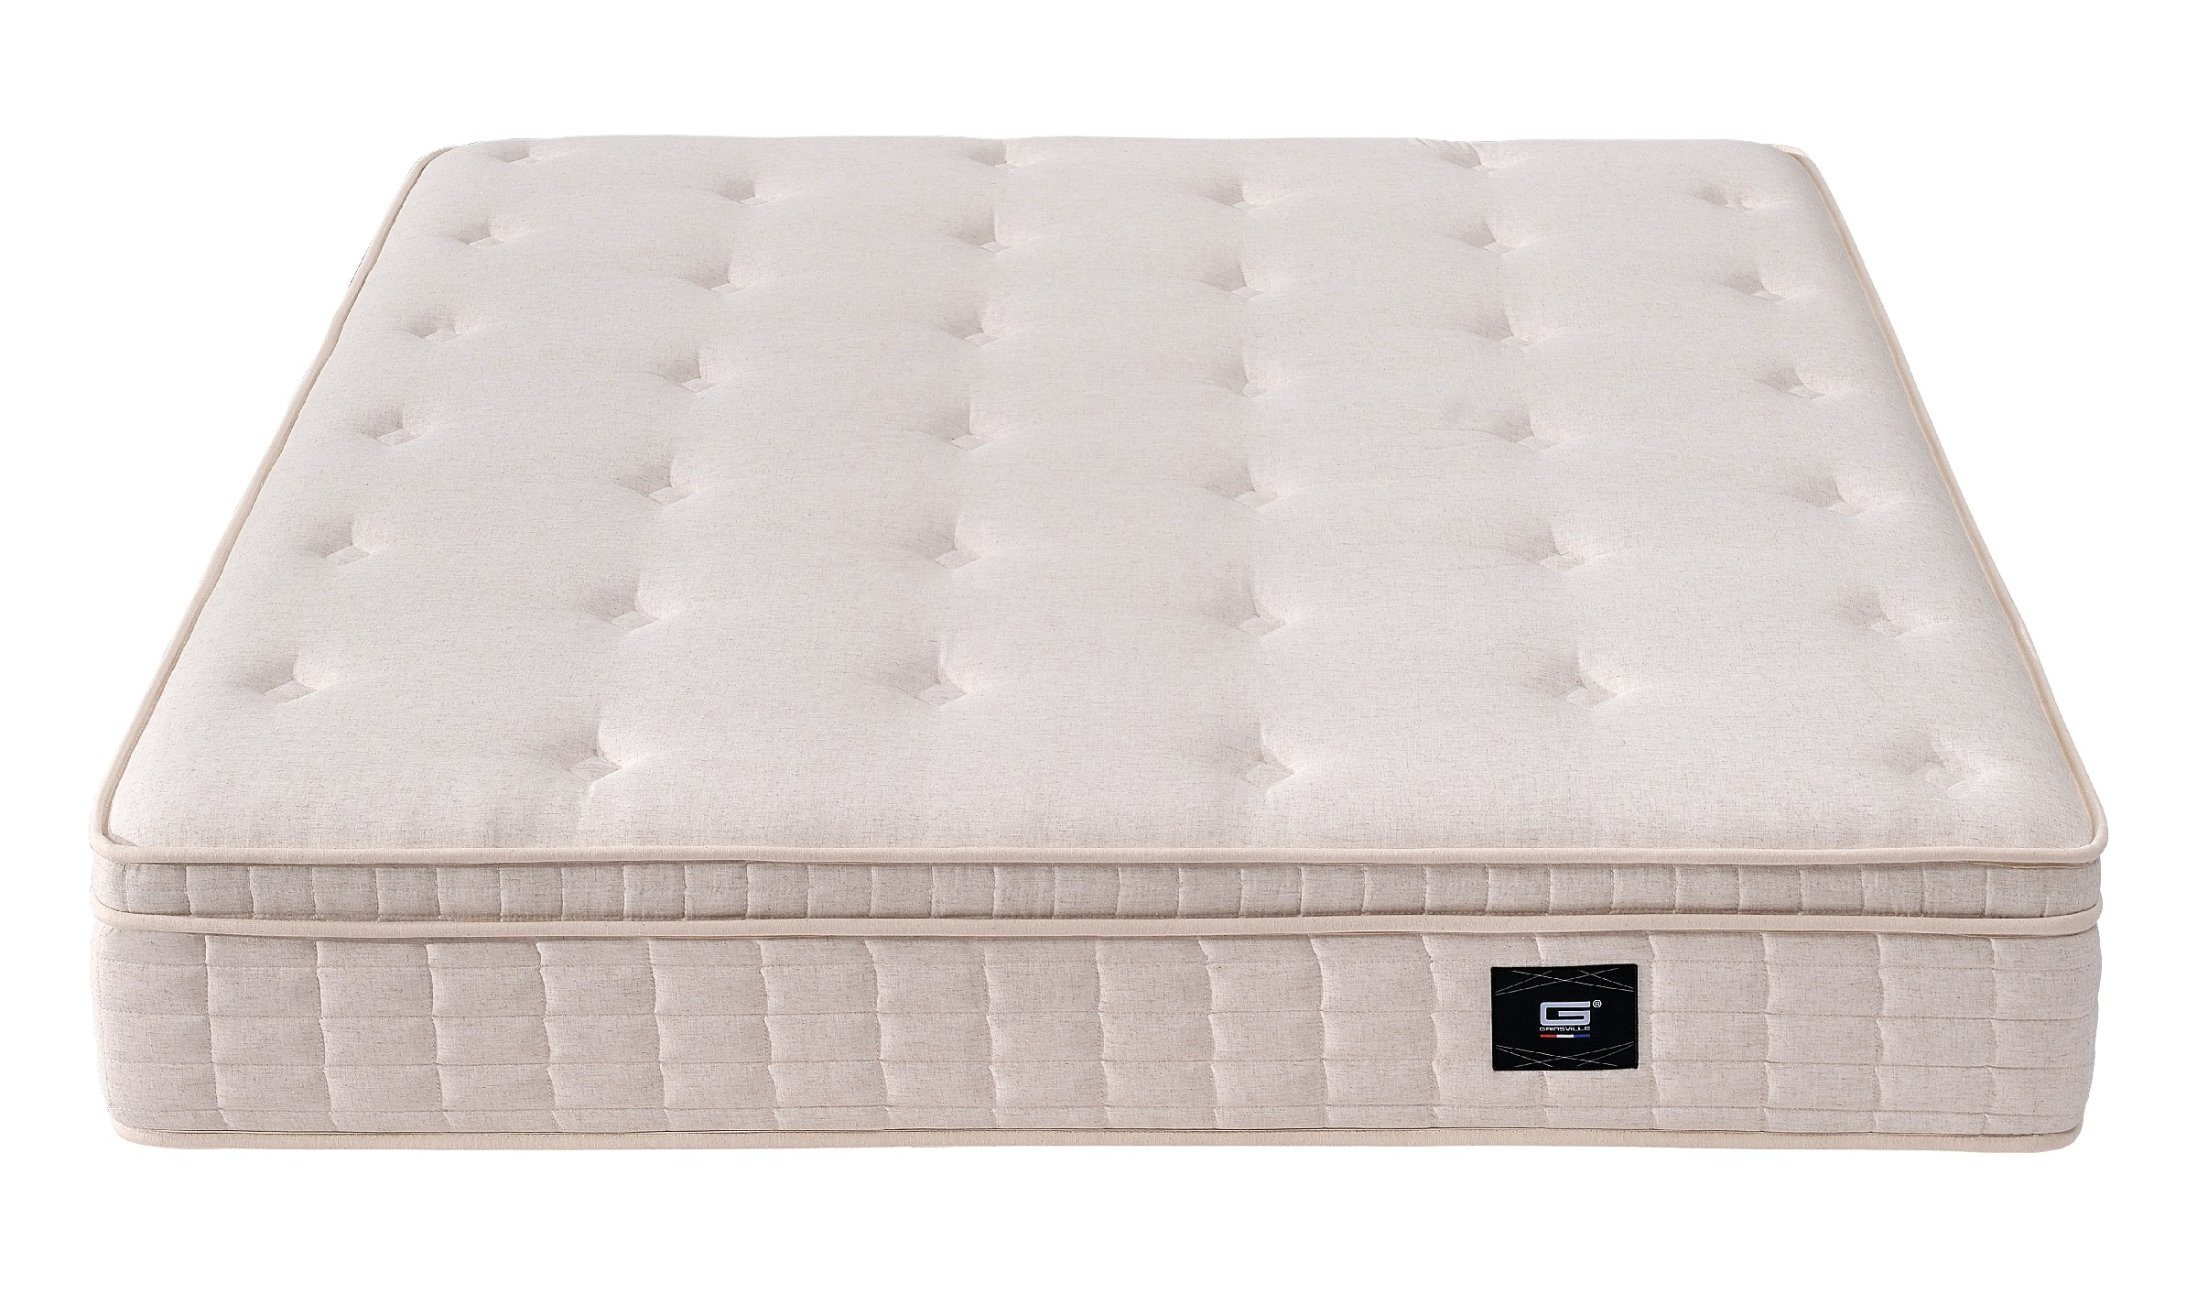 China Hot Sale Beautiful Memory Foam Mattress Bed ...